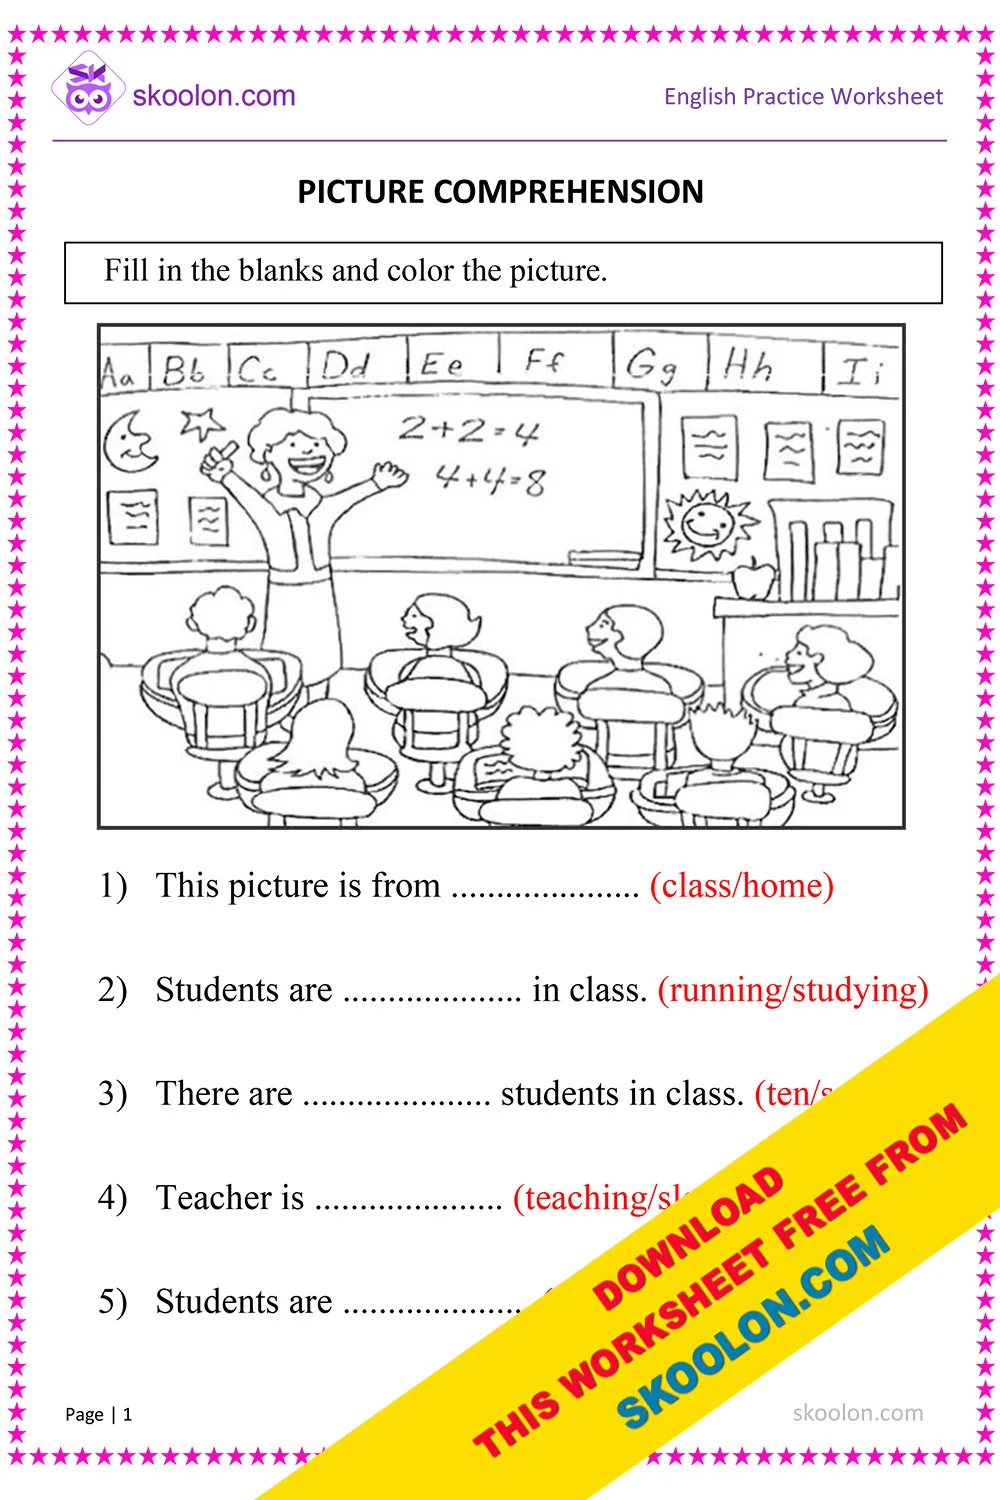 Picture Comprehension Worksheet for Grade 1